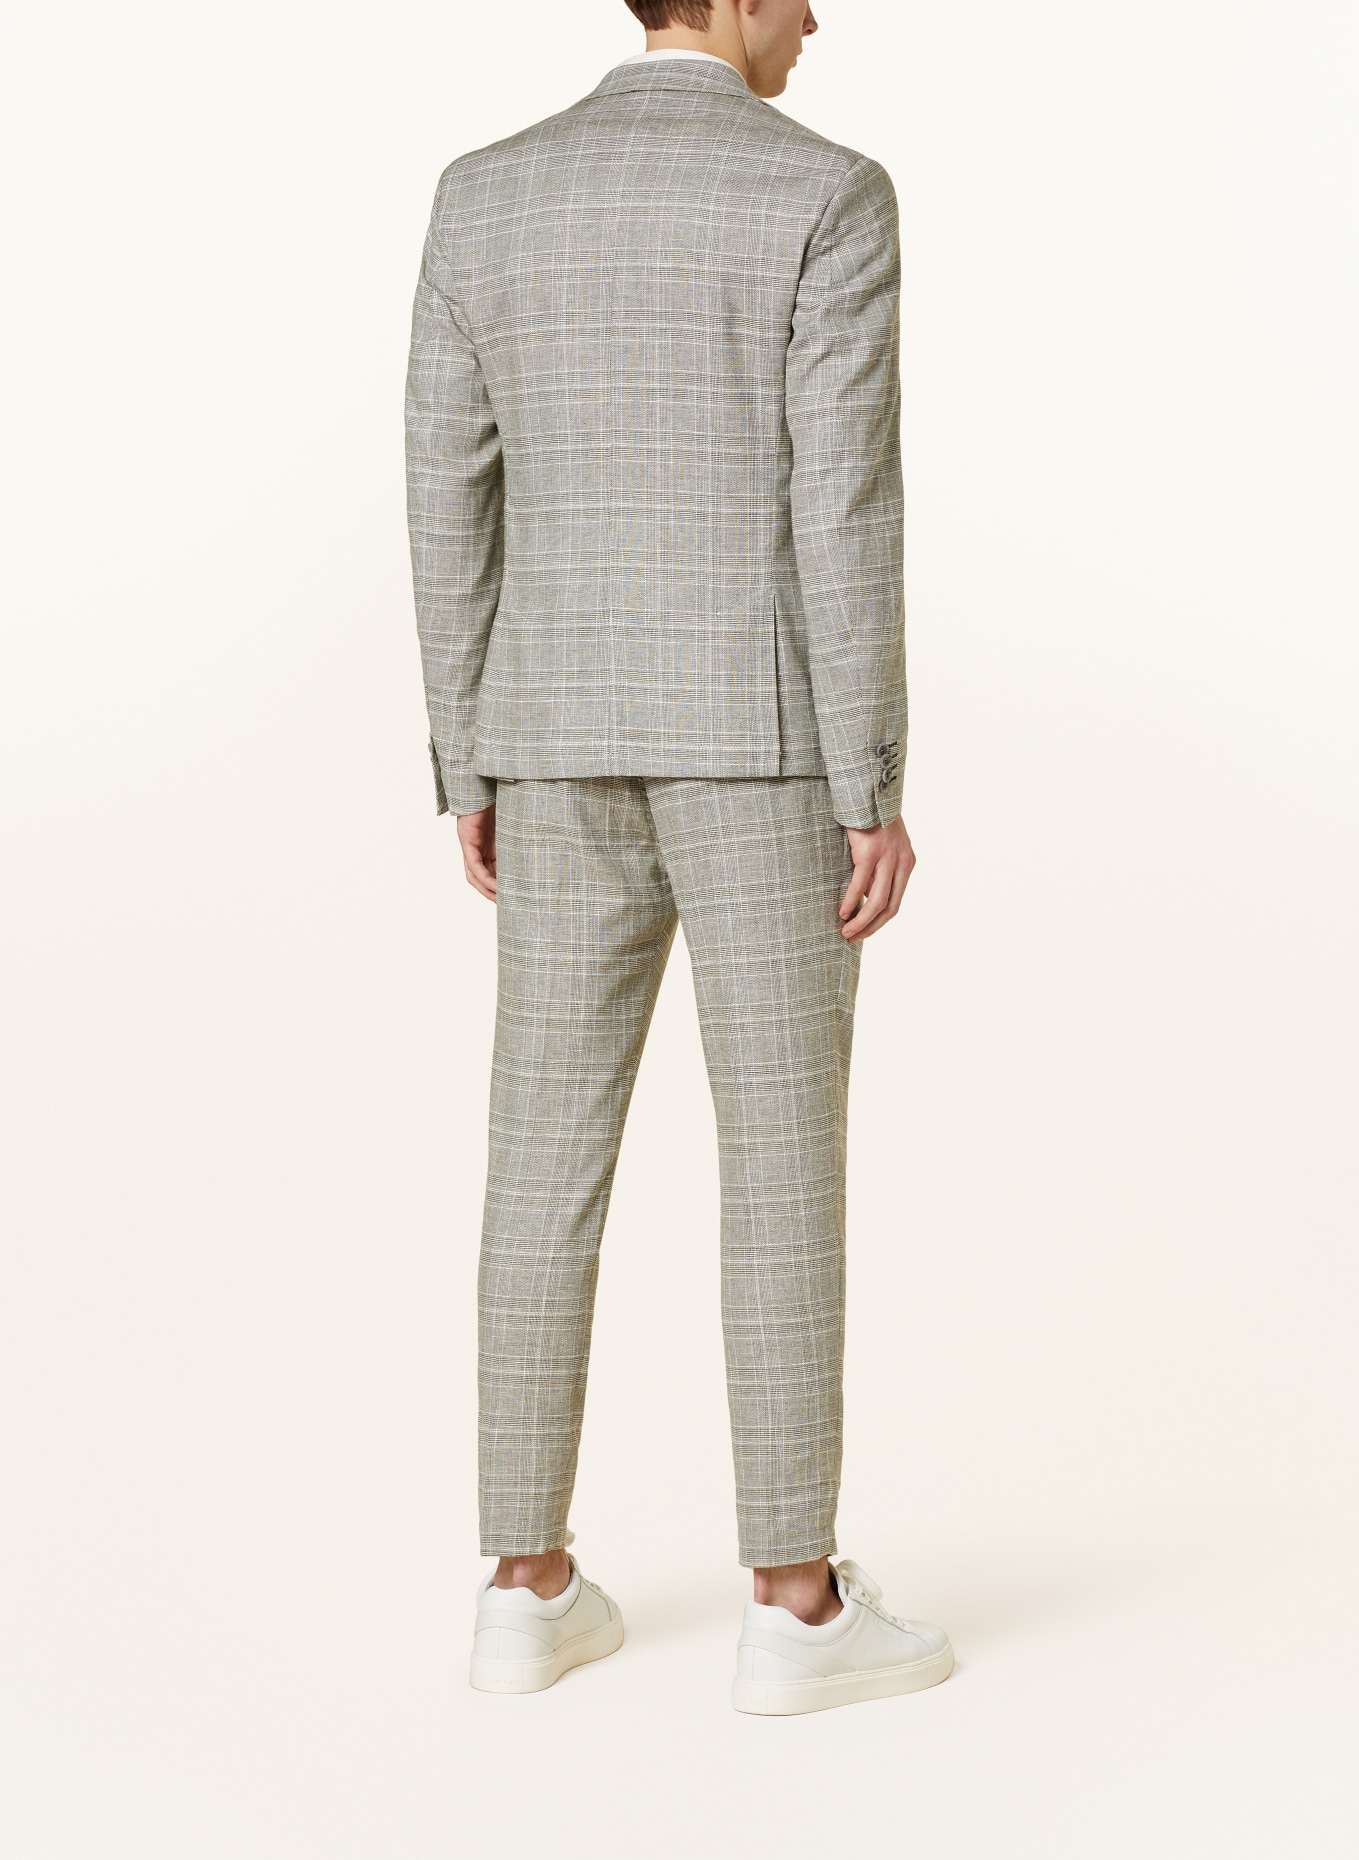 CINQUE Suit jacket CIDATI regular fit, Color: 82 hellgrUEn (Image 3)